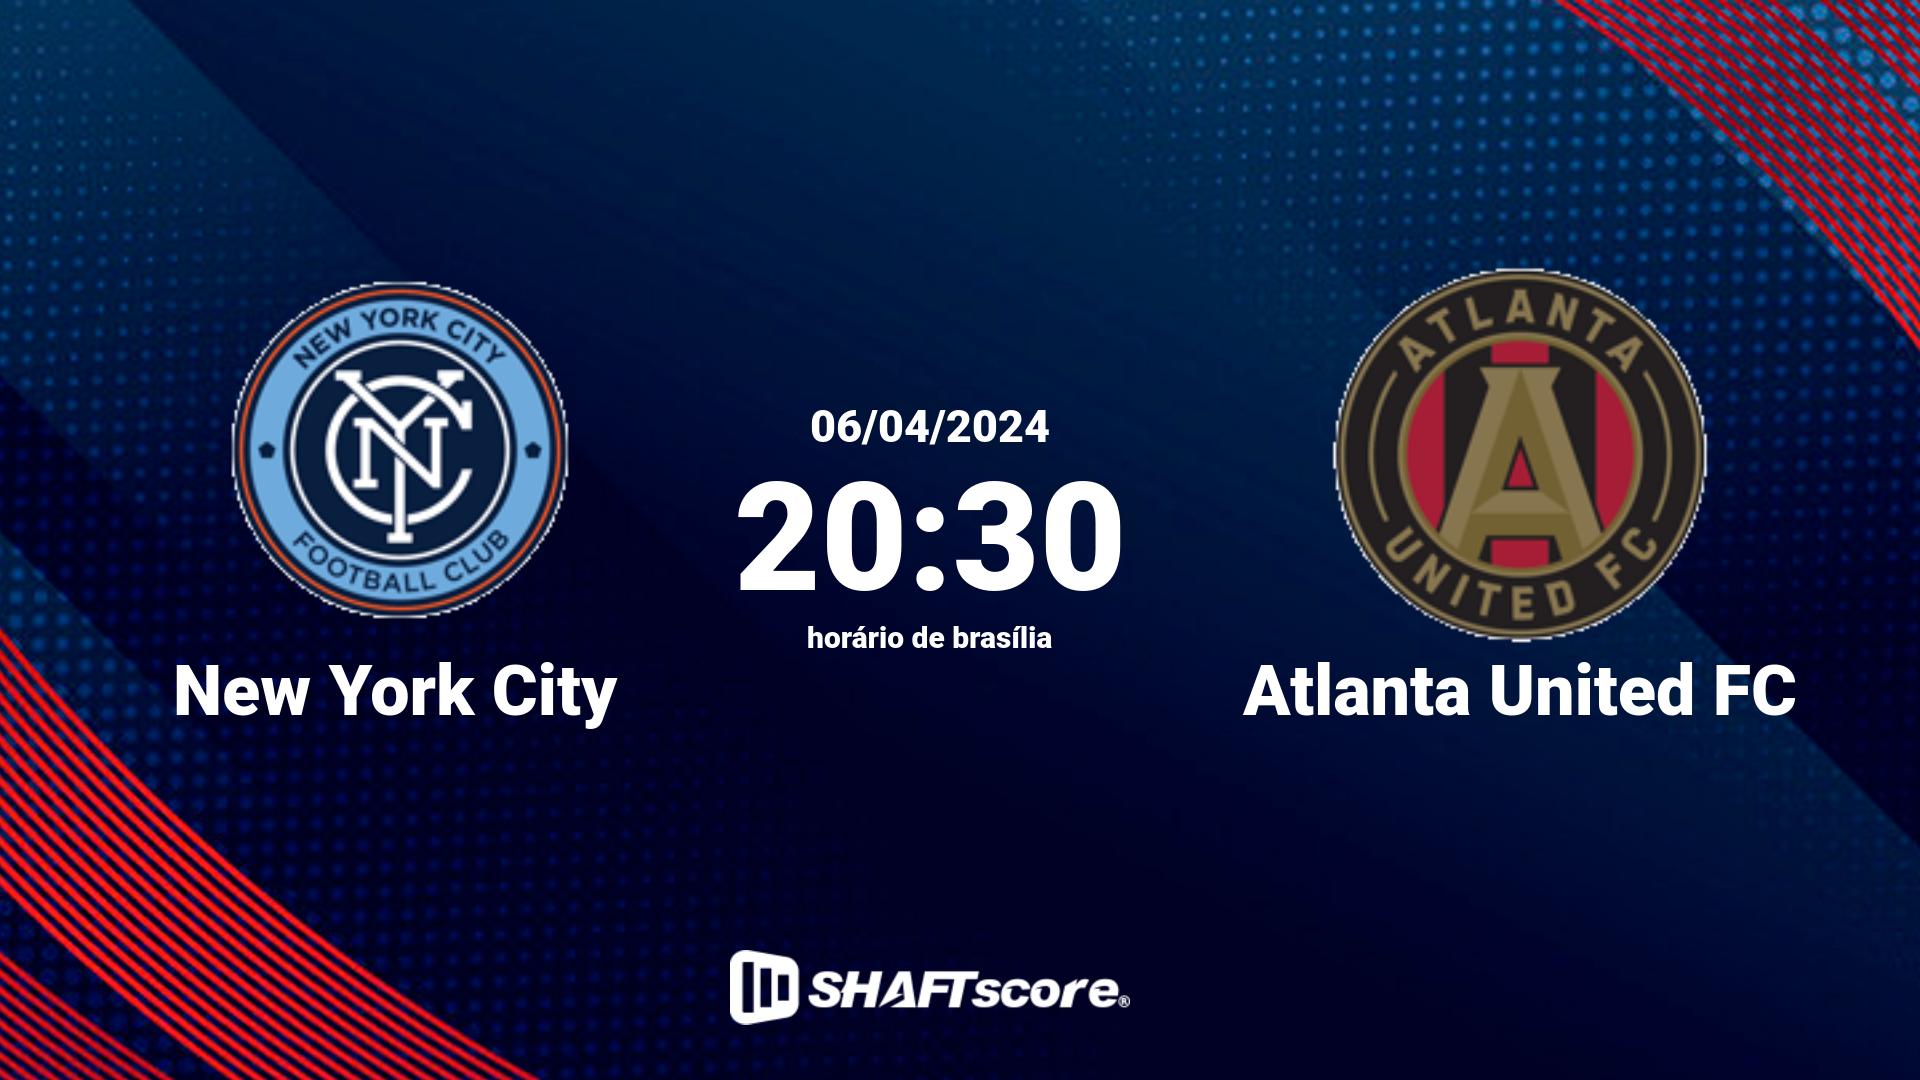 Estatísticas do jogo New York City vs Atlanta United FC 06.04 20:30